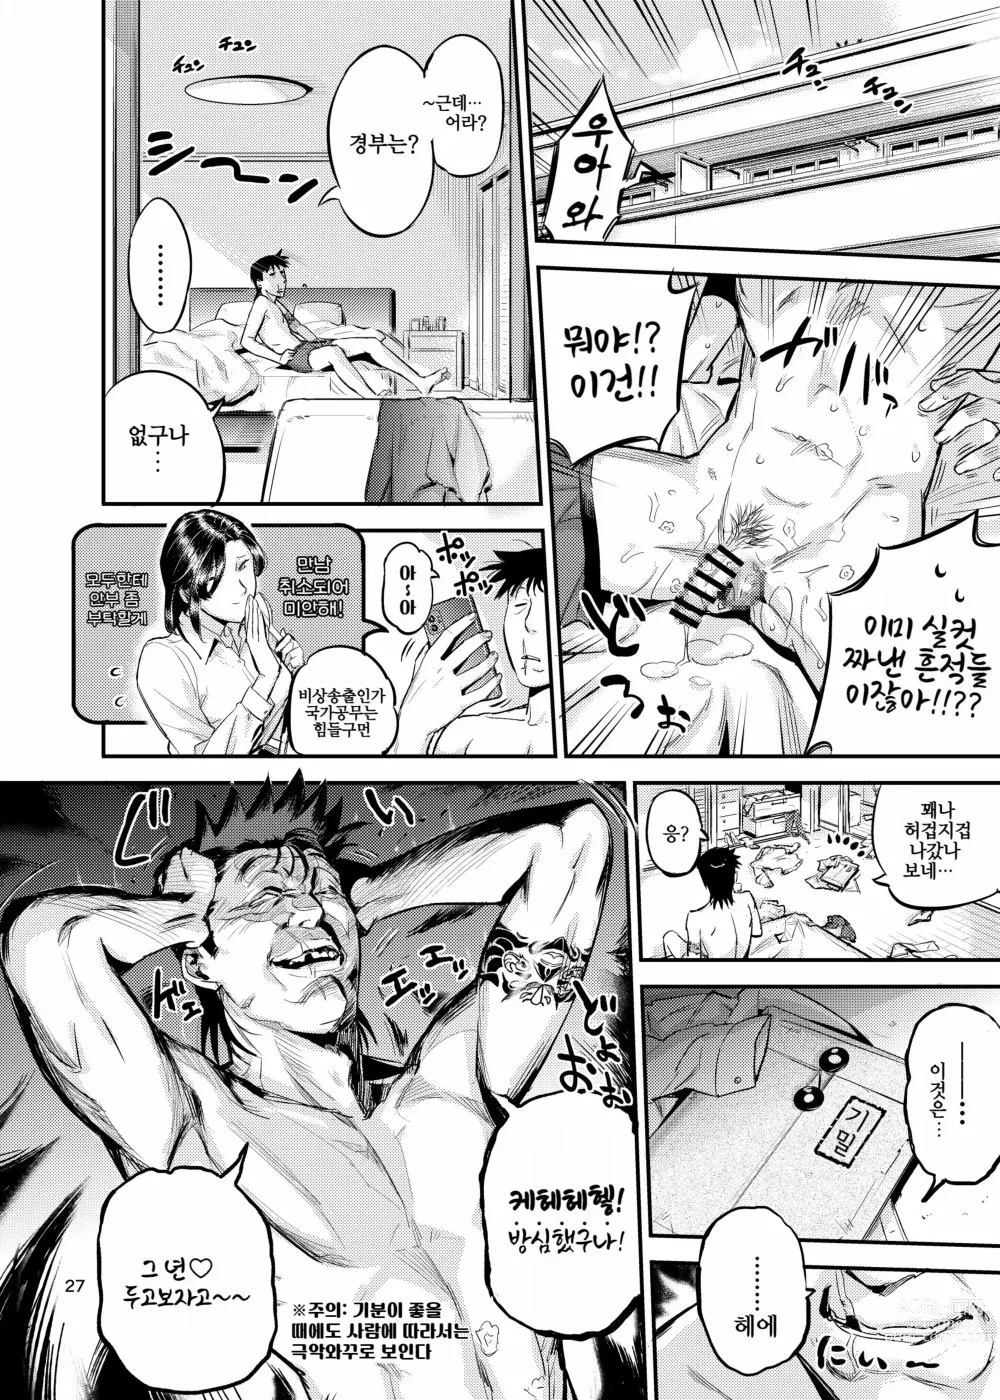 Page 27 of doujinshi 이웃집 꼬시는 방법 2